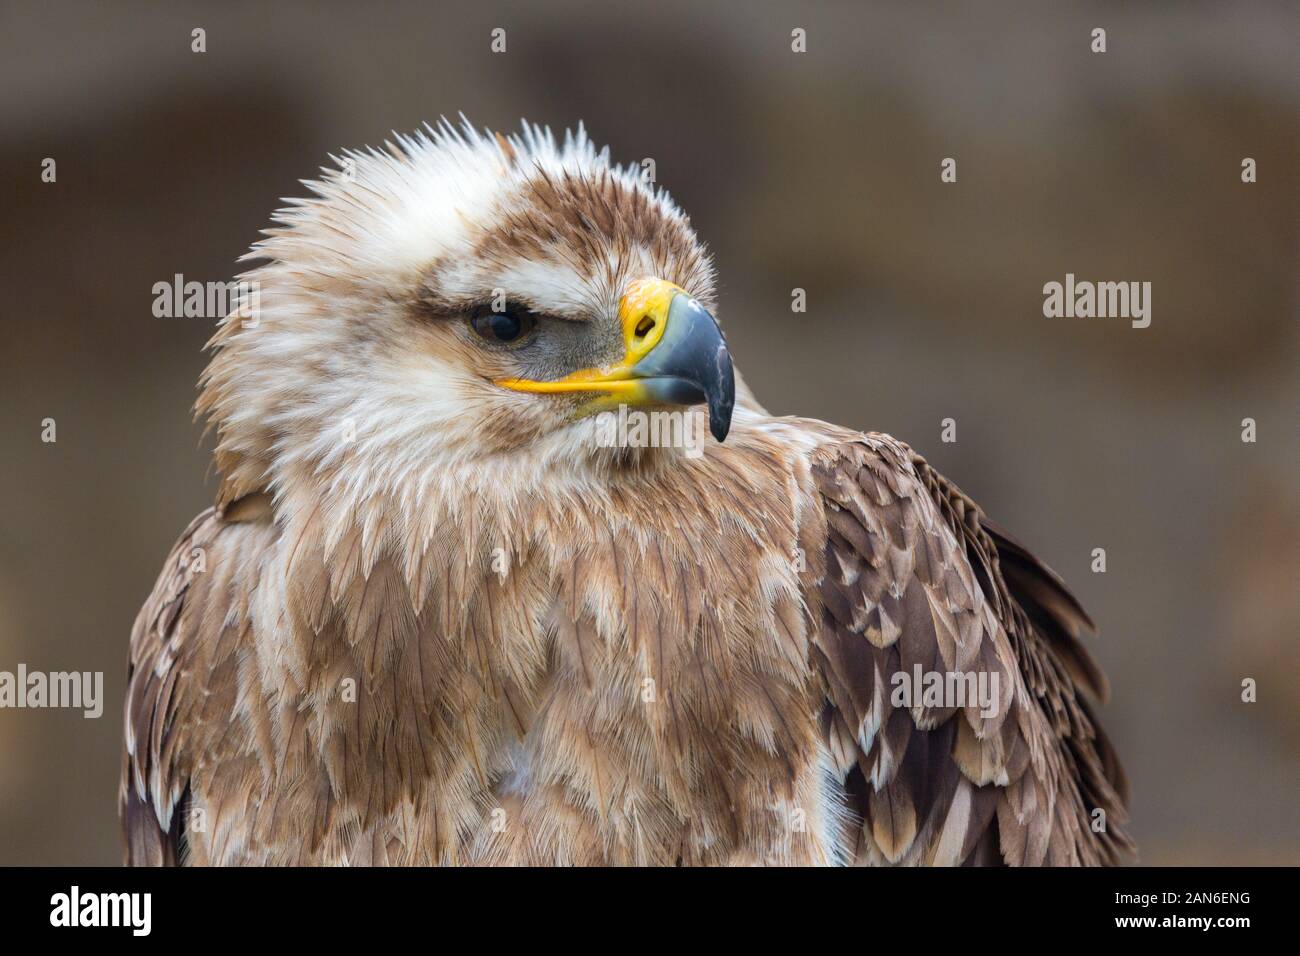 Profil d'un aigle impérial de l'est (aquila héliaca) en regardant à droite. Portrait avec détails des yeux, bec jaune / noir, plumes. Banque D'Images